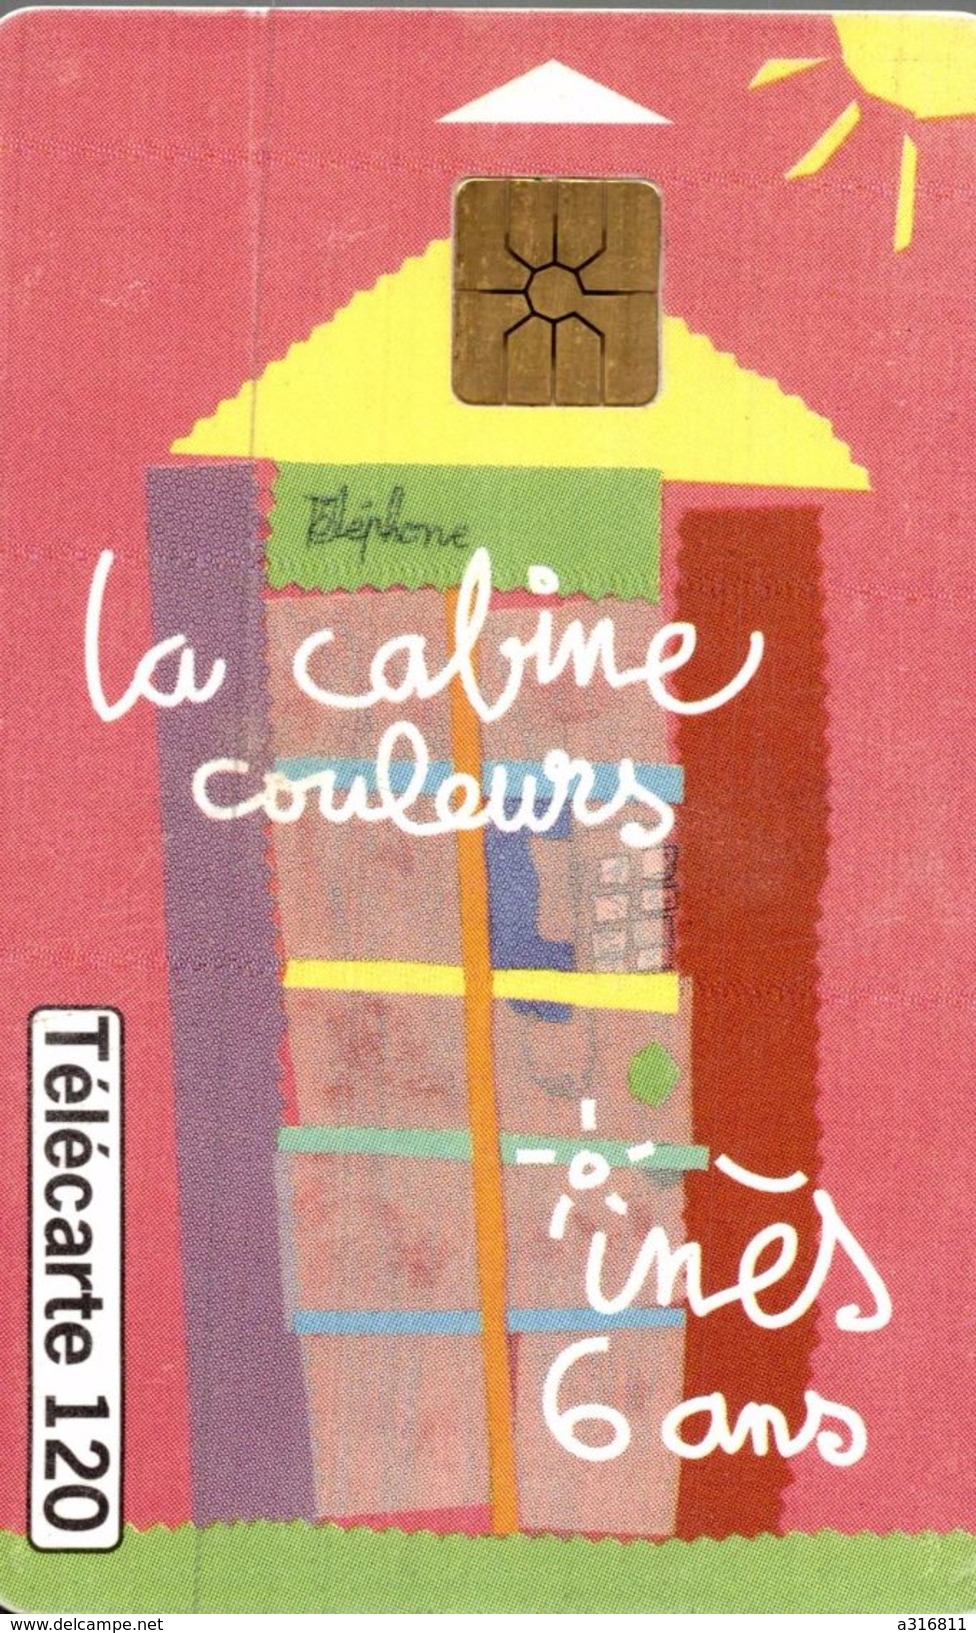 LA CABINE COULEURS - 120 Units